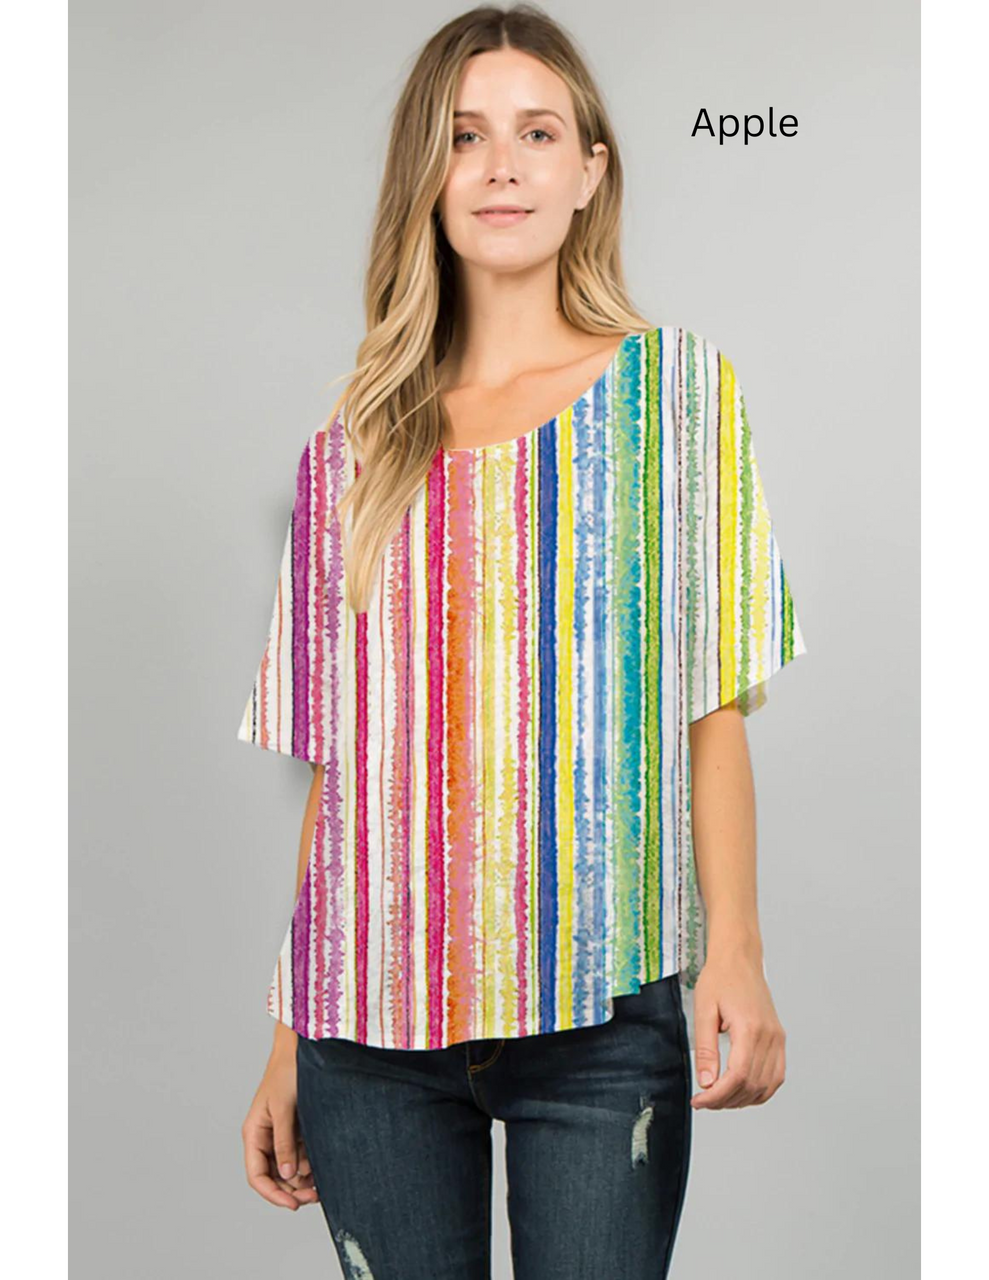 025- ET Lois Rainbow Knit Top